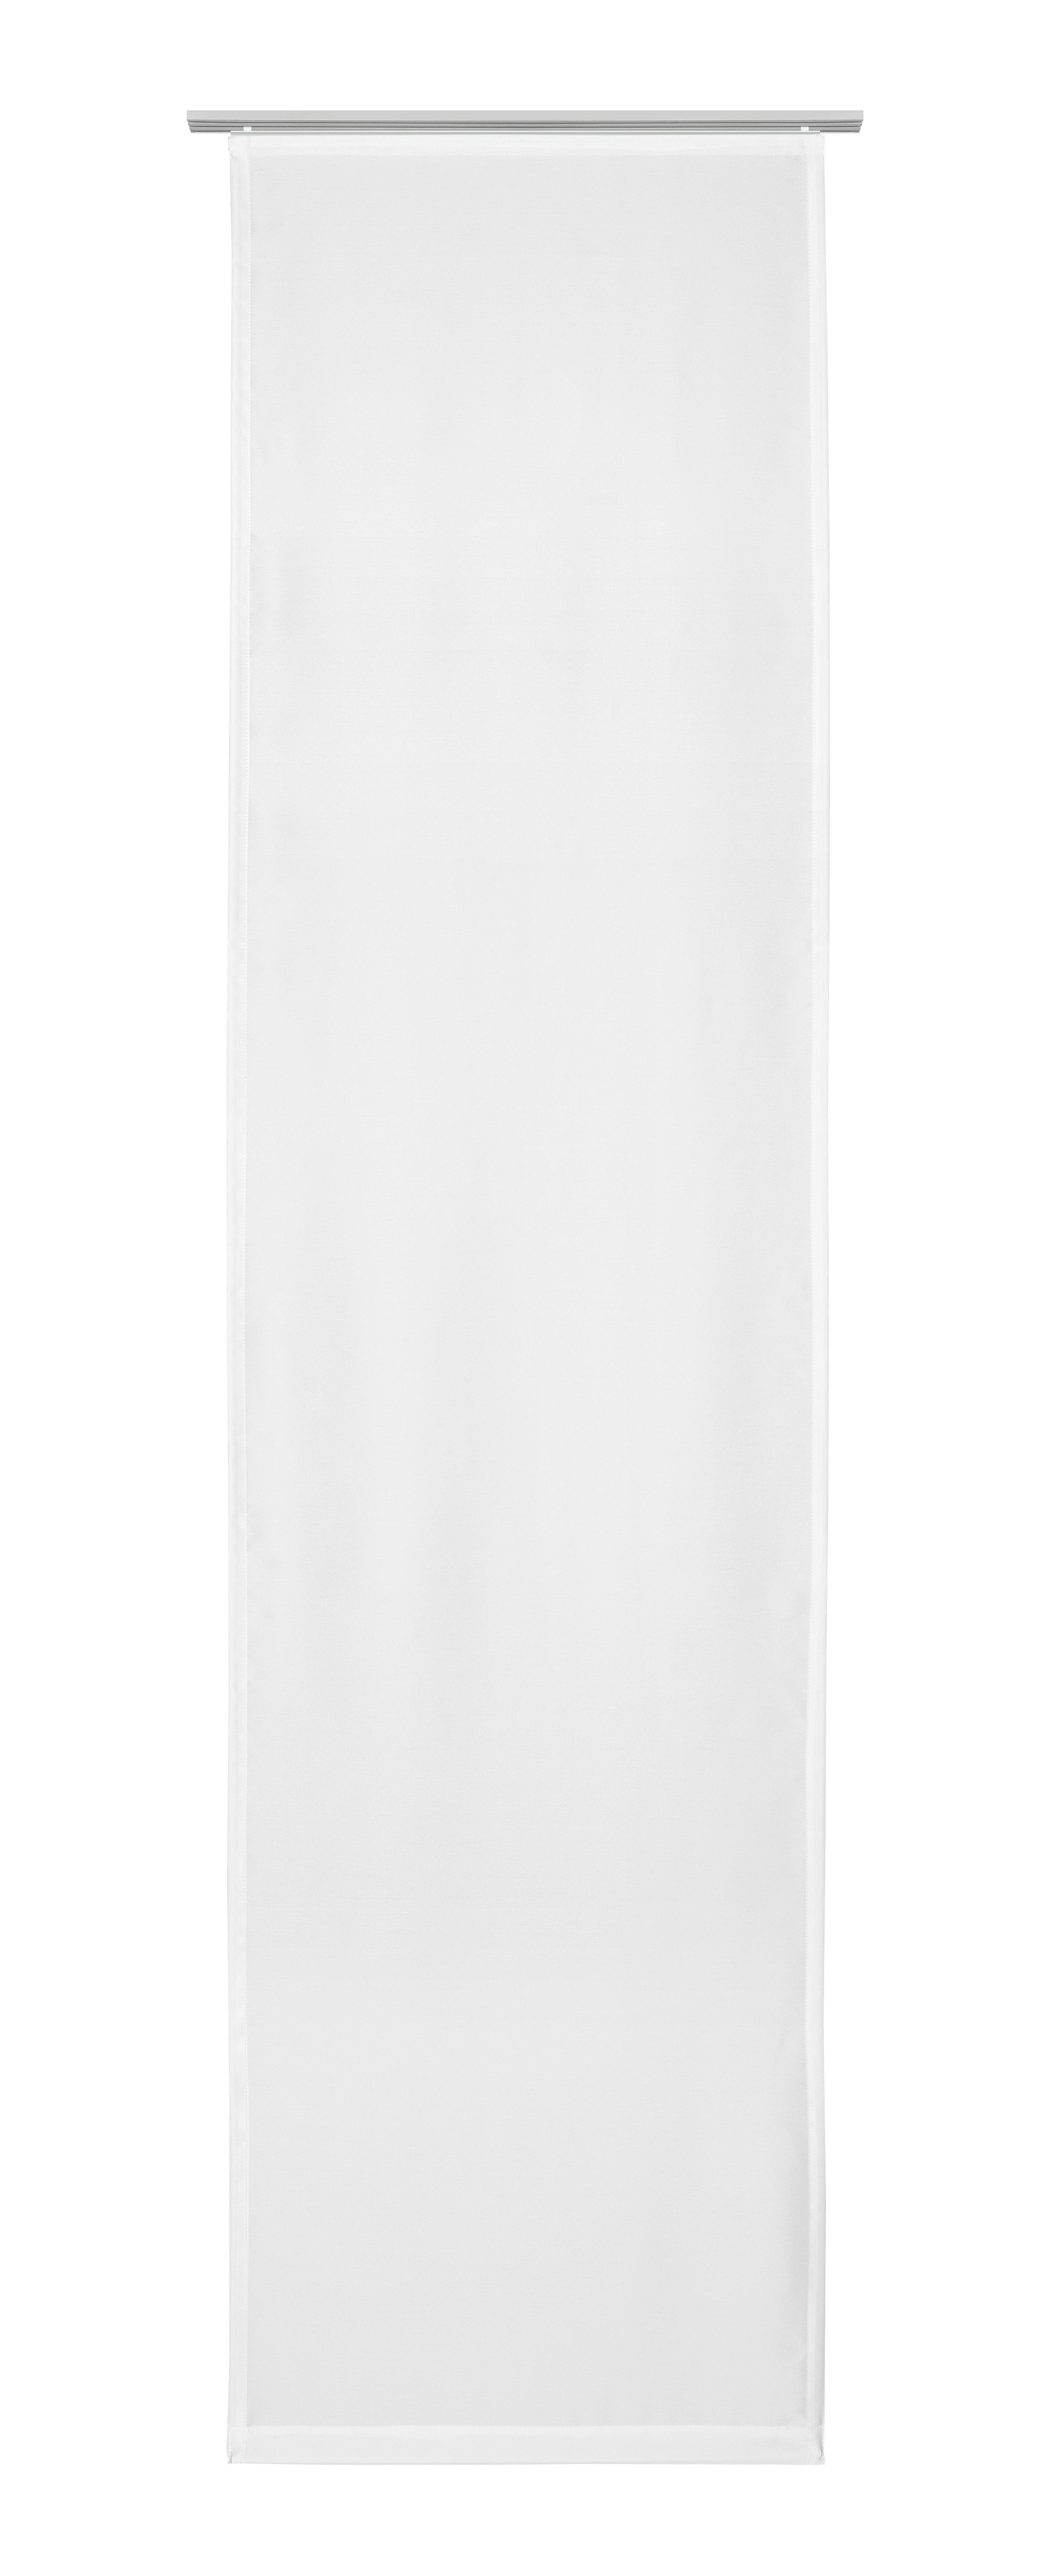 Flächenvorhang Vicky in Weiß ca. 60x245cm - Weiß, MODERN, Textil (60/245cm) - Modern Living